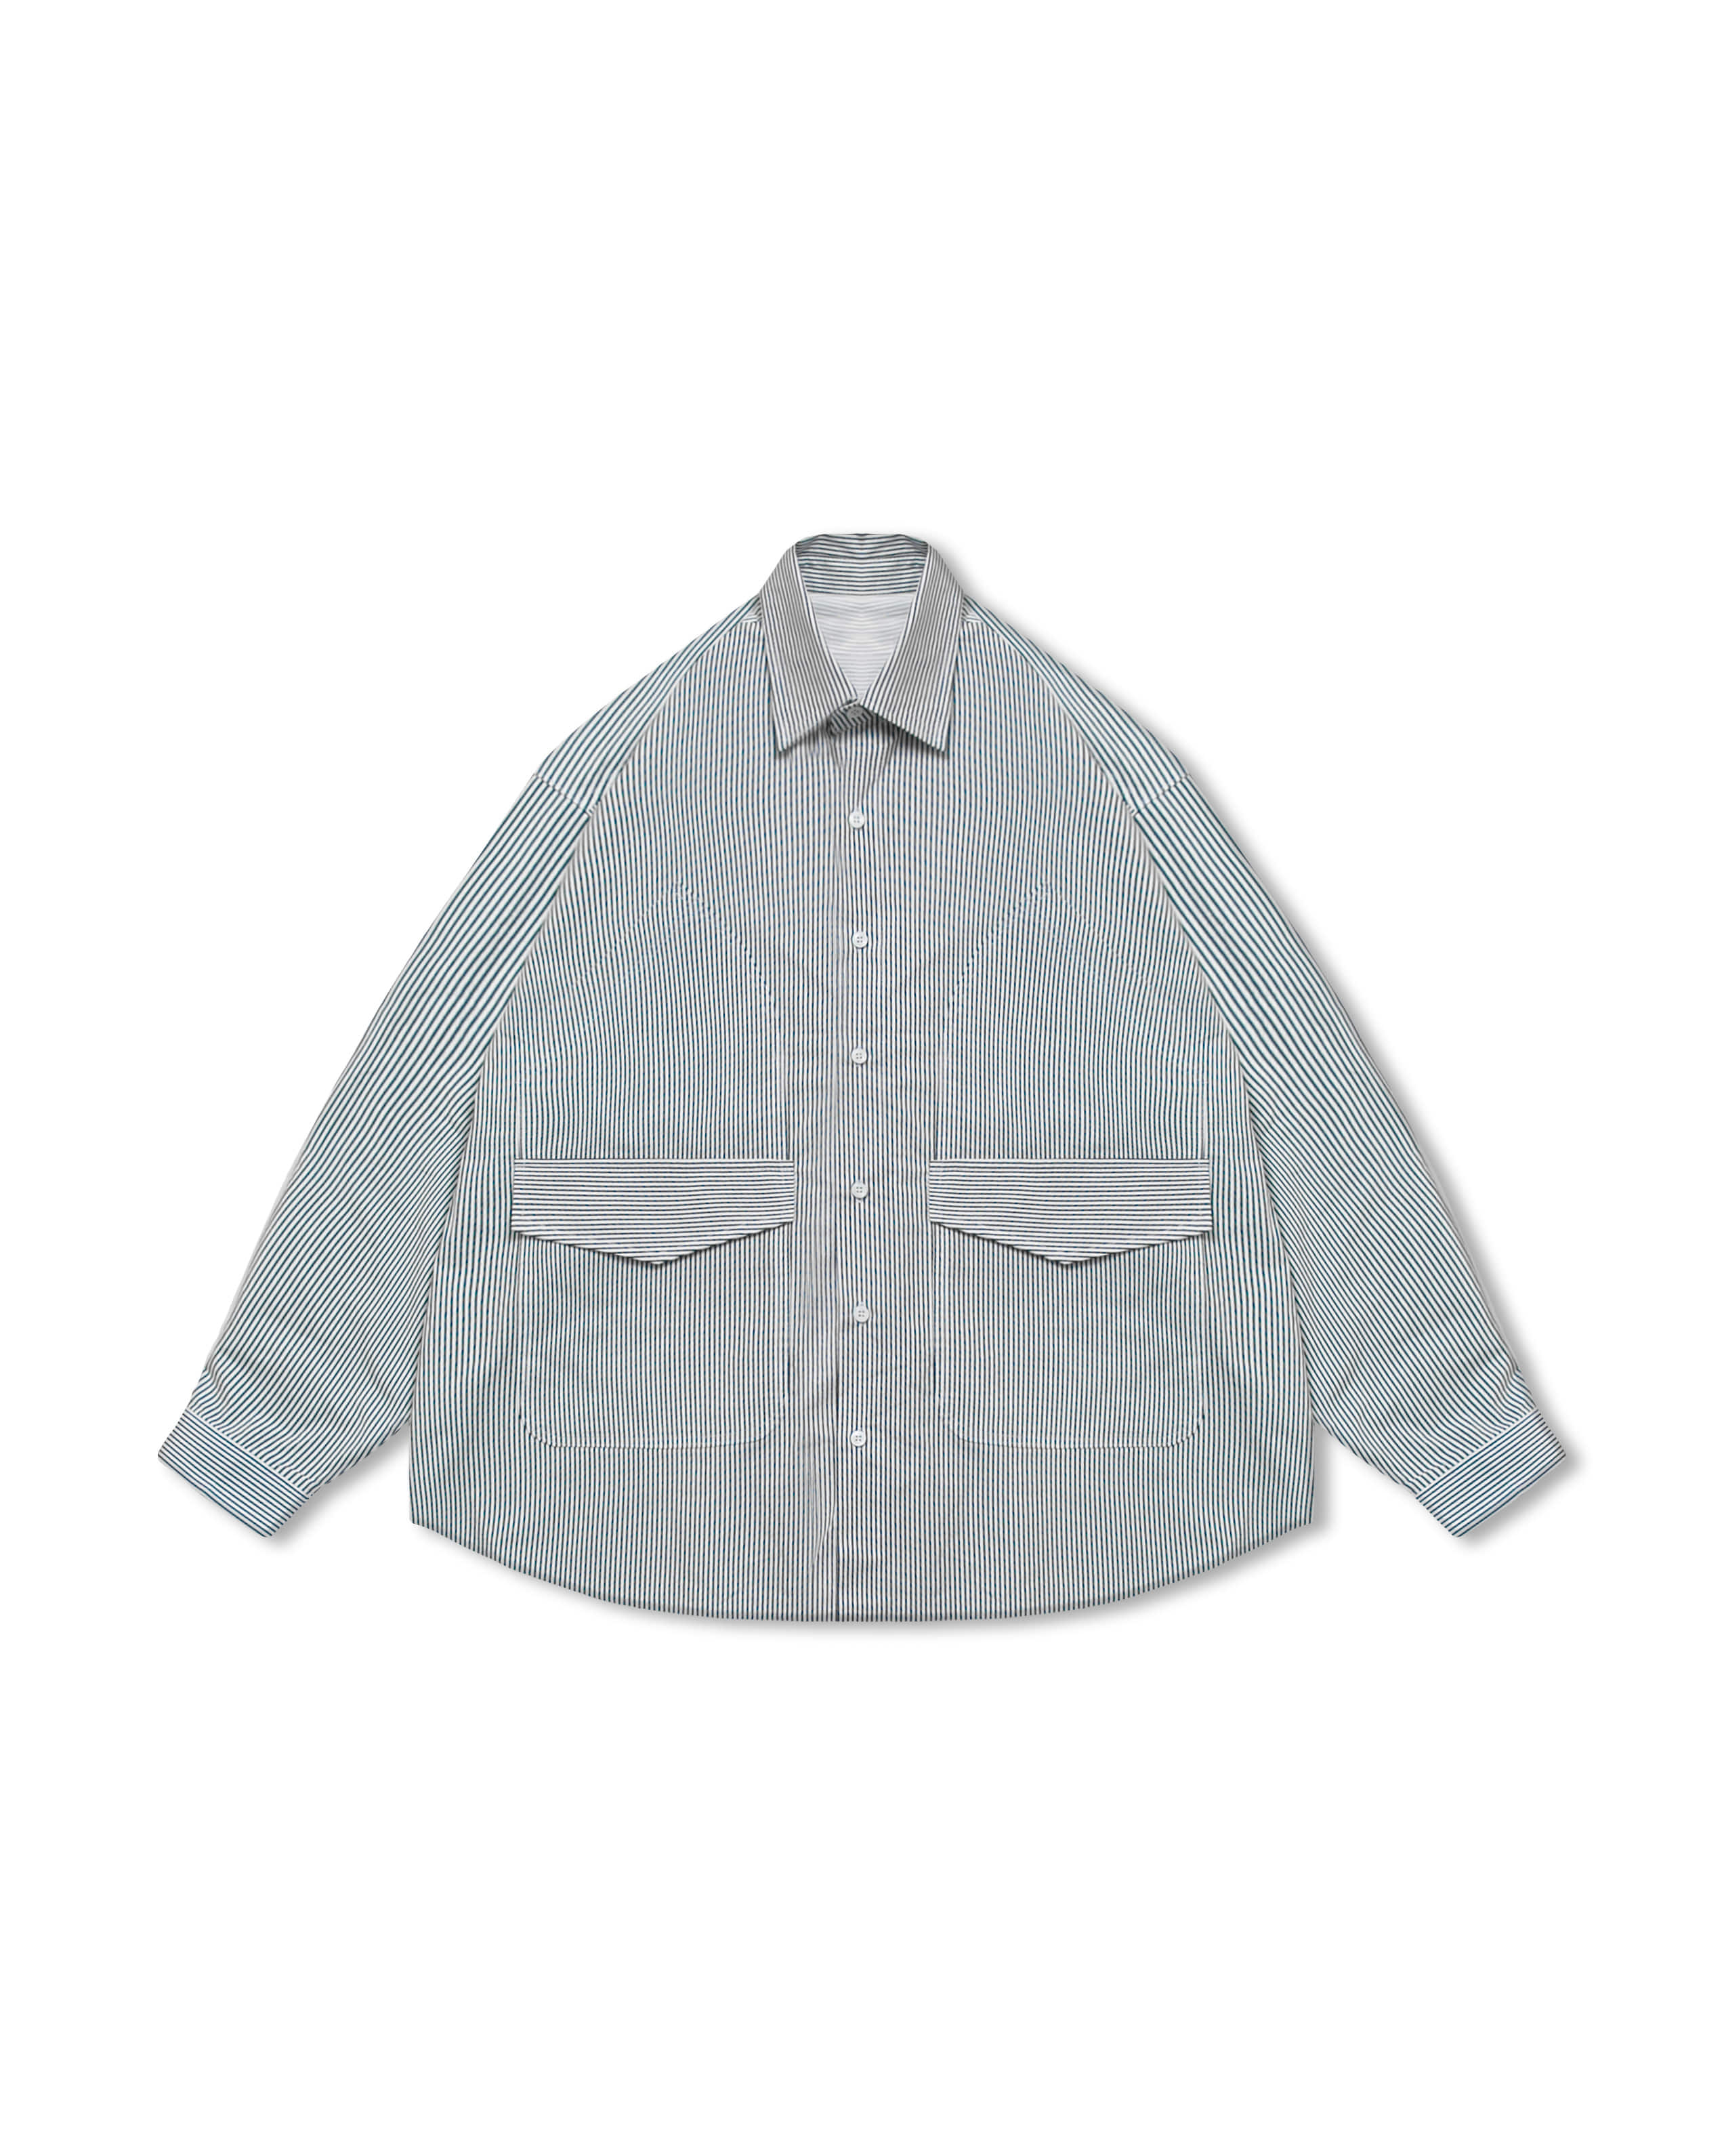 Arch Pocket Stripe Shirt - Navy